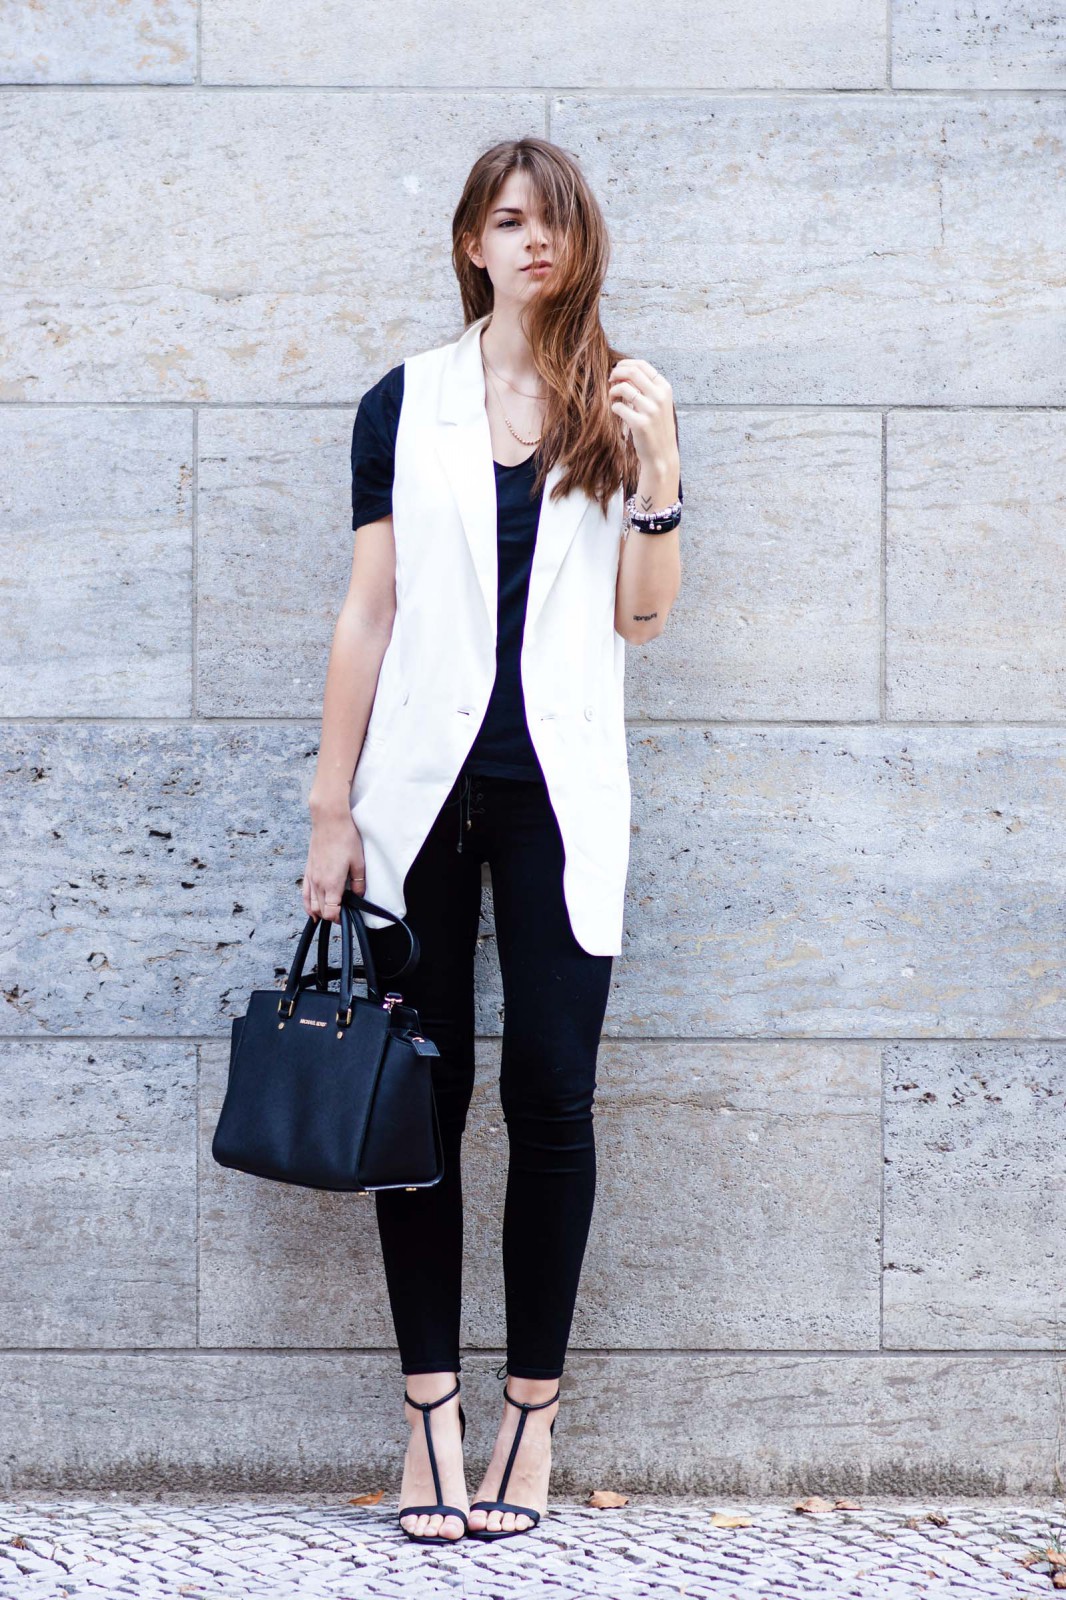 sleeveless blazer outfit ideas